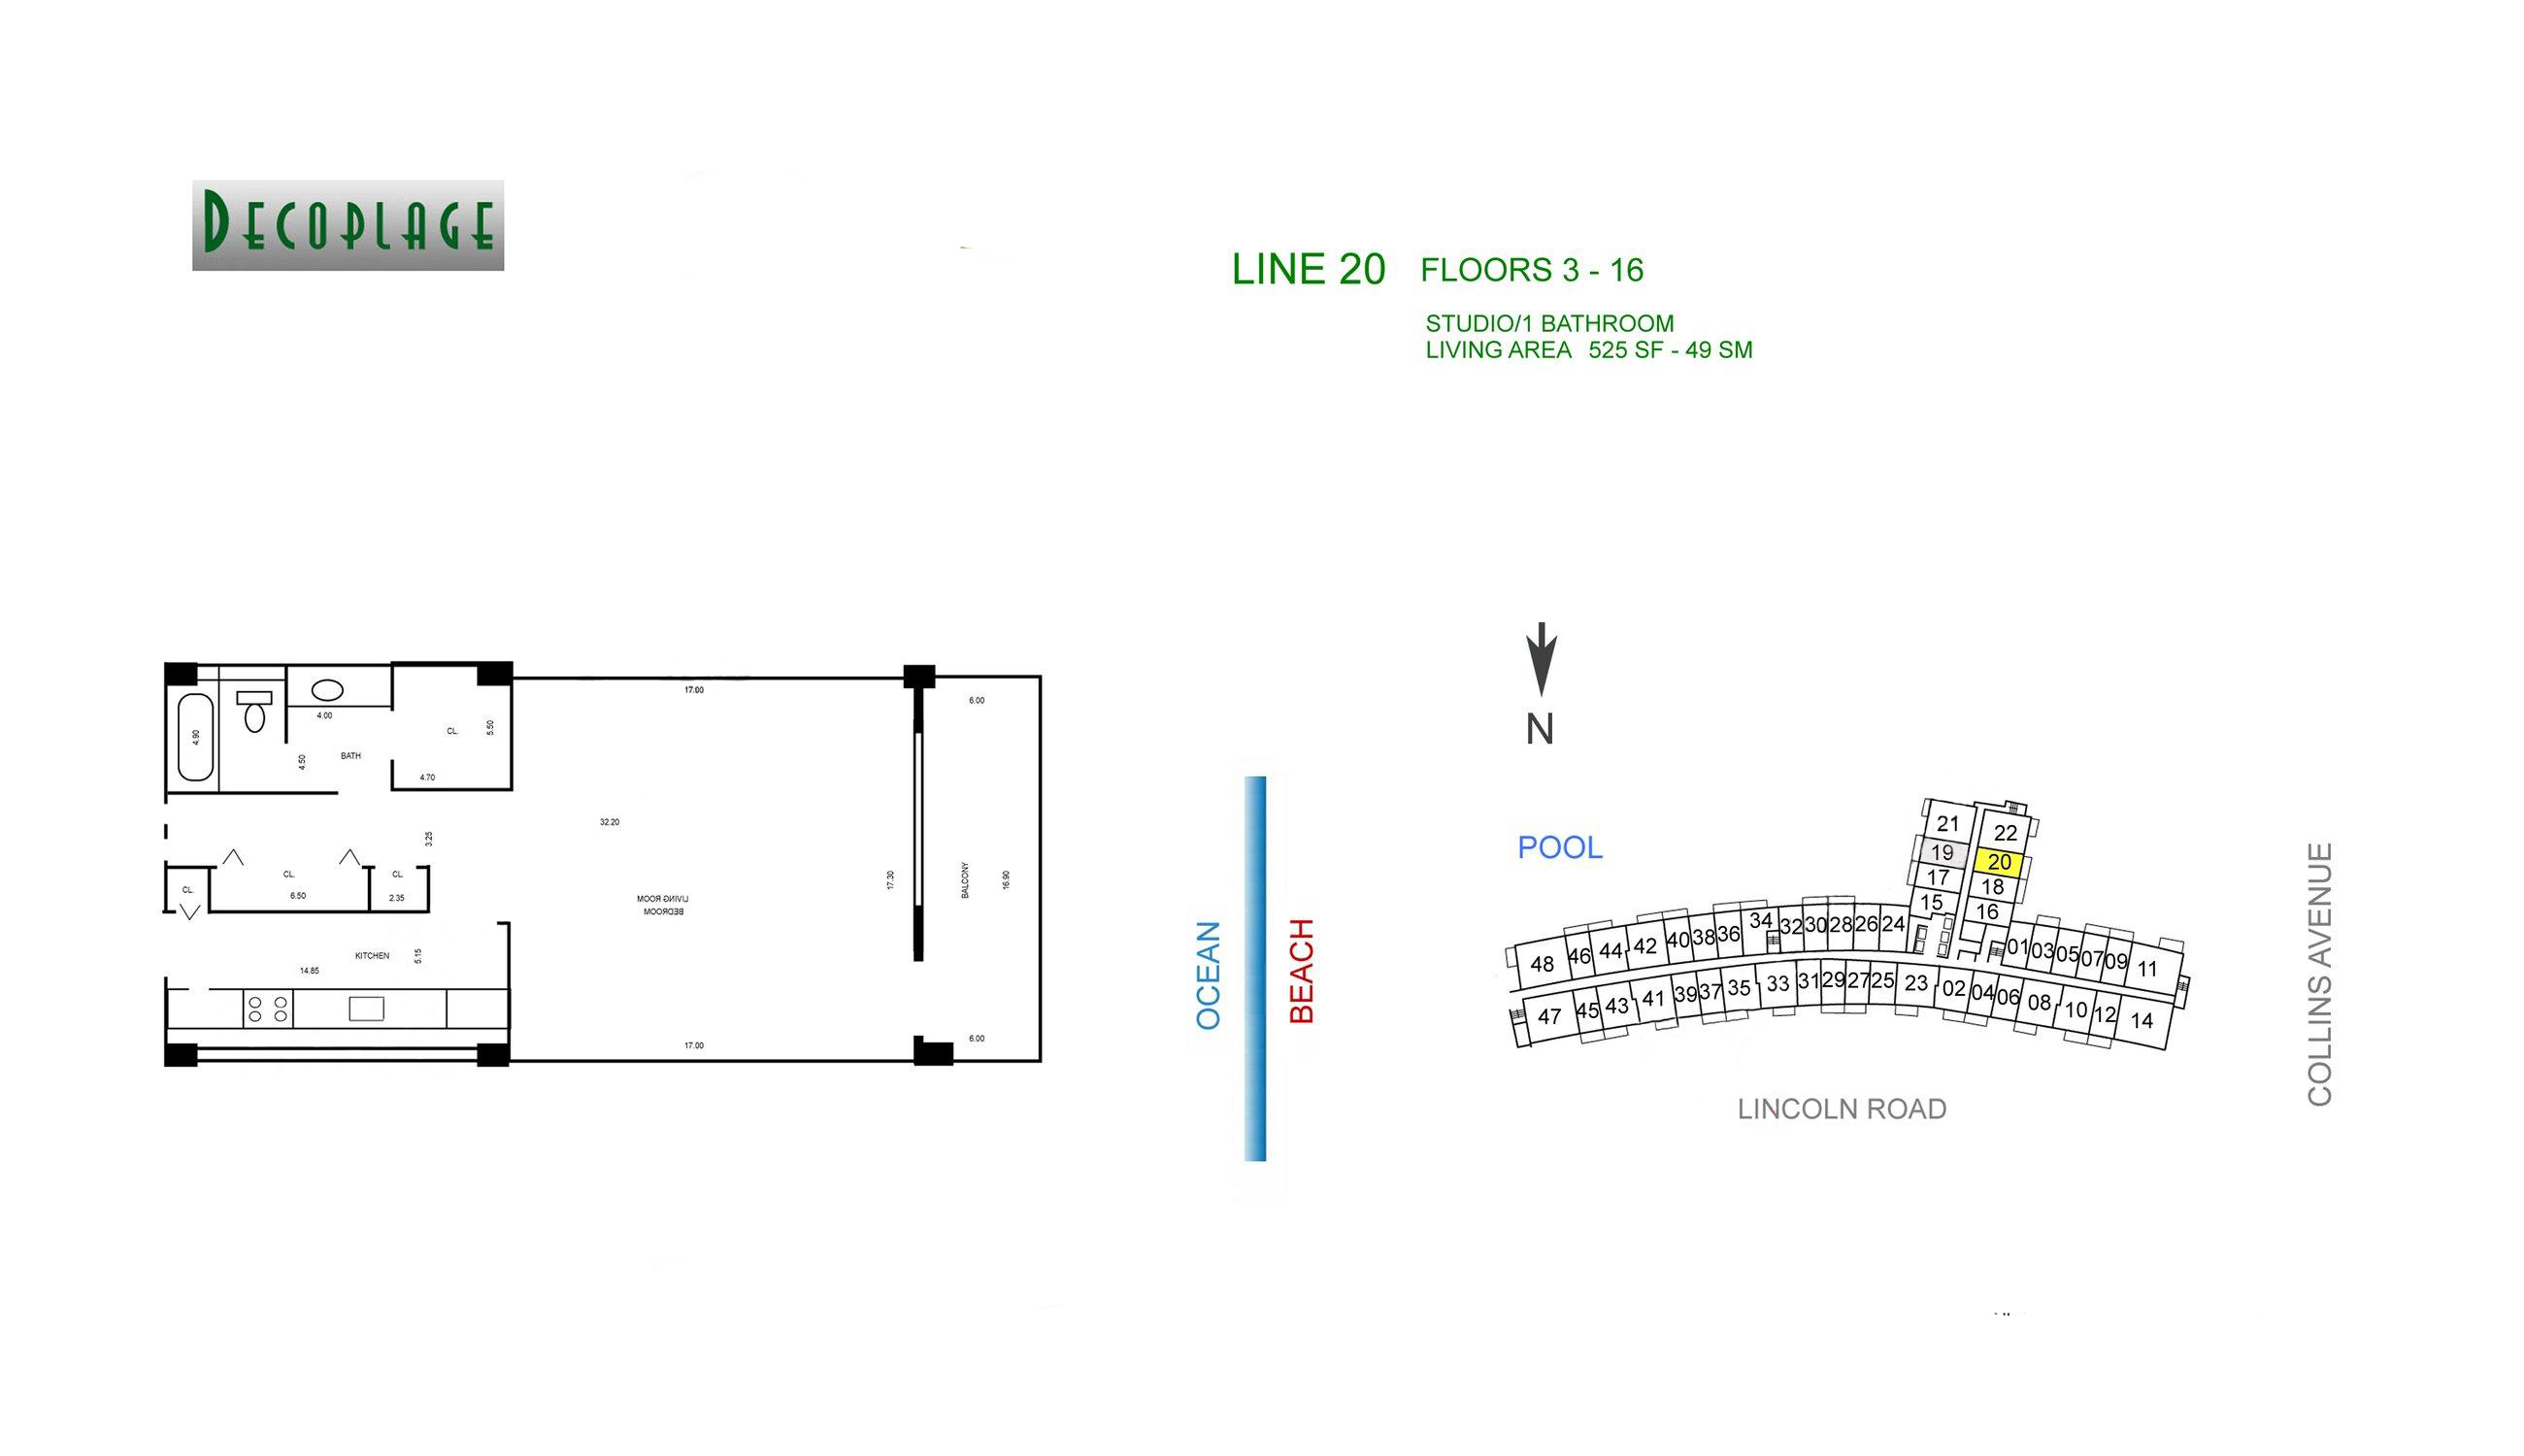 Decoplage Lines 20 Floors 3-16